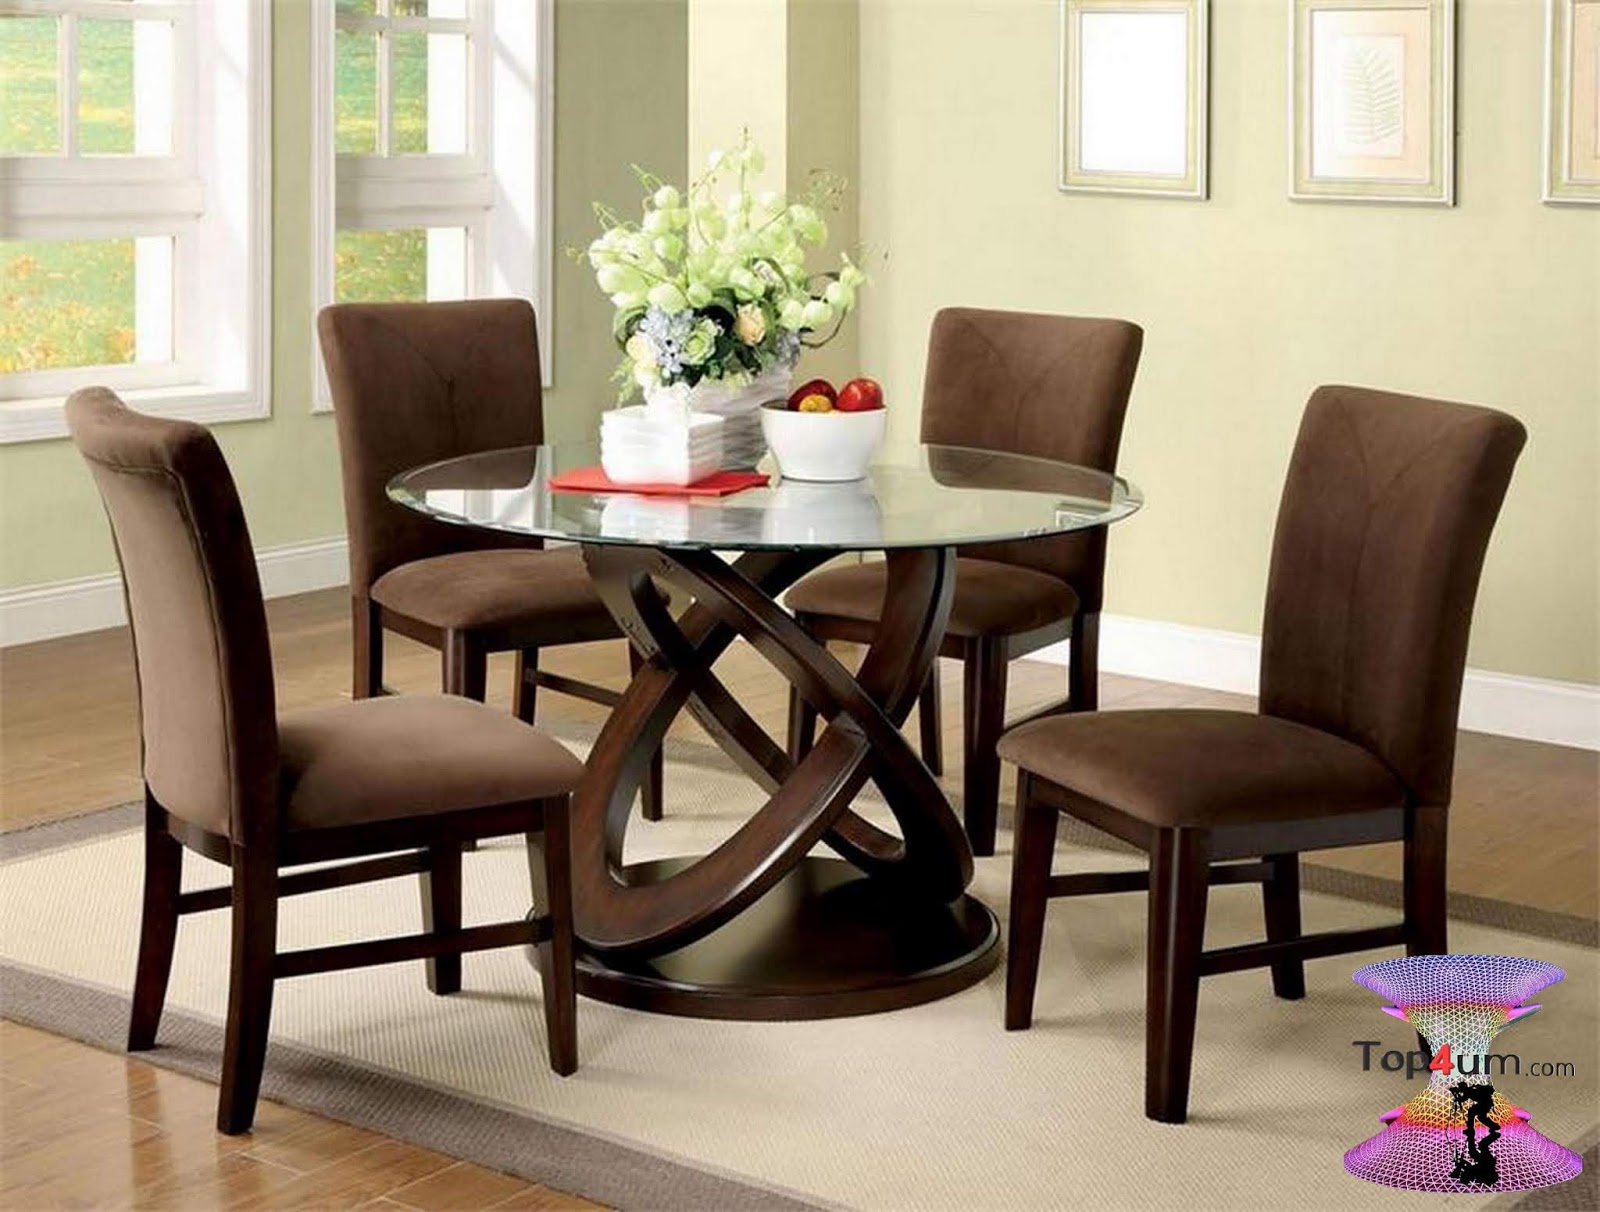 Мягкий стол стул. Стол обеденный ORDT-d6060-SPR. Стул Dining Chair. Стол со стульями в гостиную. Столы и стулья в интерьере.